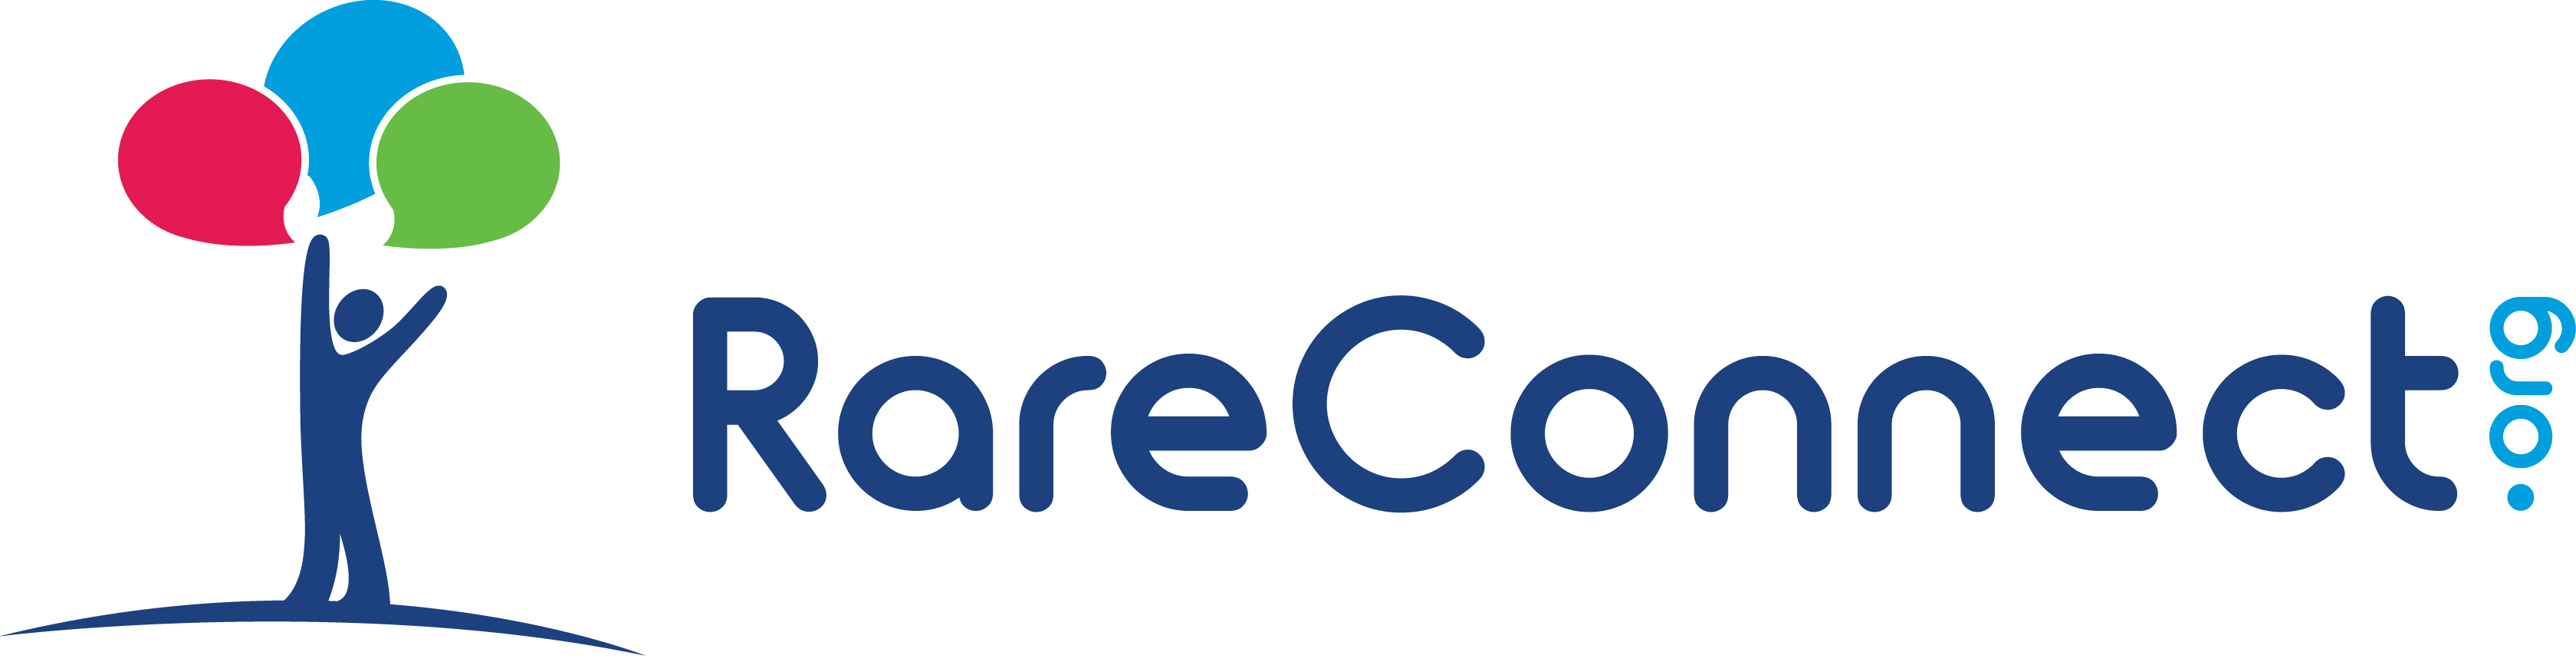 RareConnect-logo.